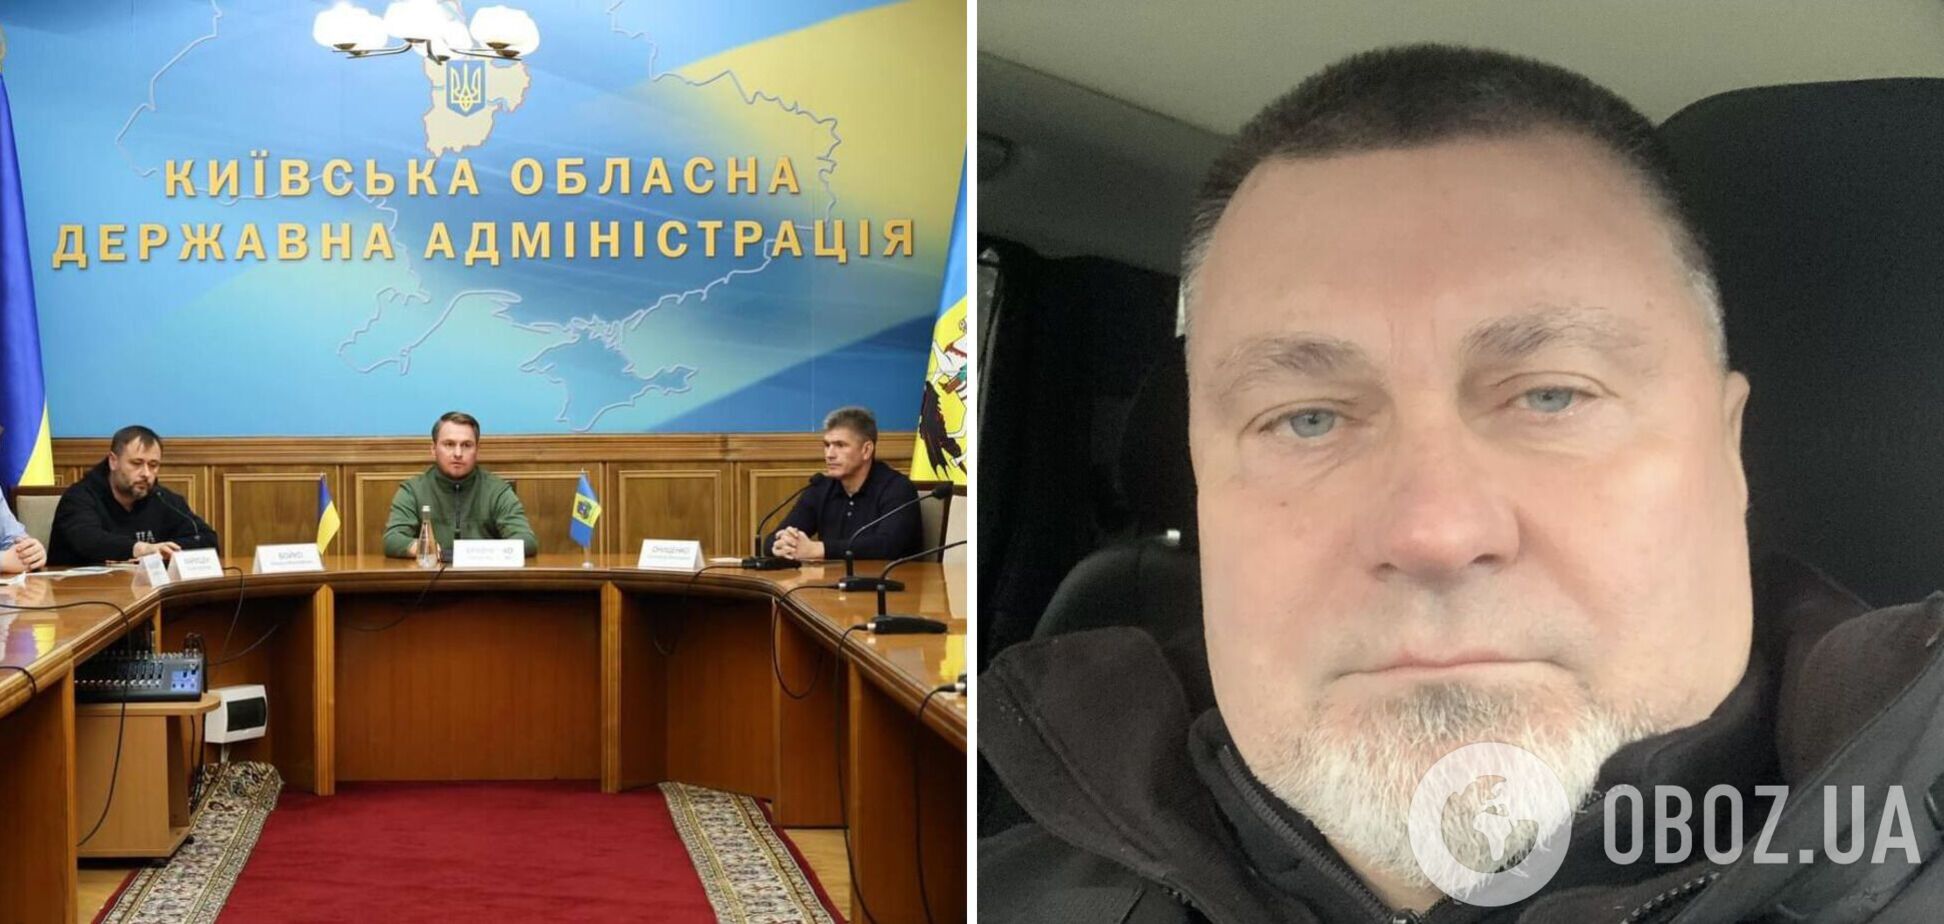 'Подібна поведінка неприпустима': голова Київської ОВА пообіцяв звільнити Майбоженка, який п'яним в'їхав у натовп людей автівкою
